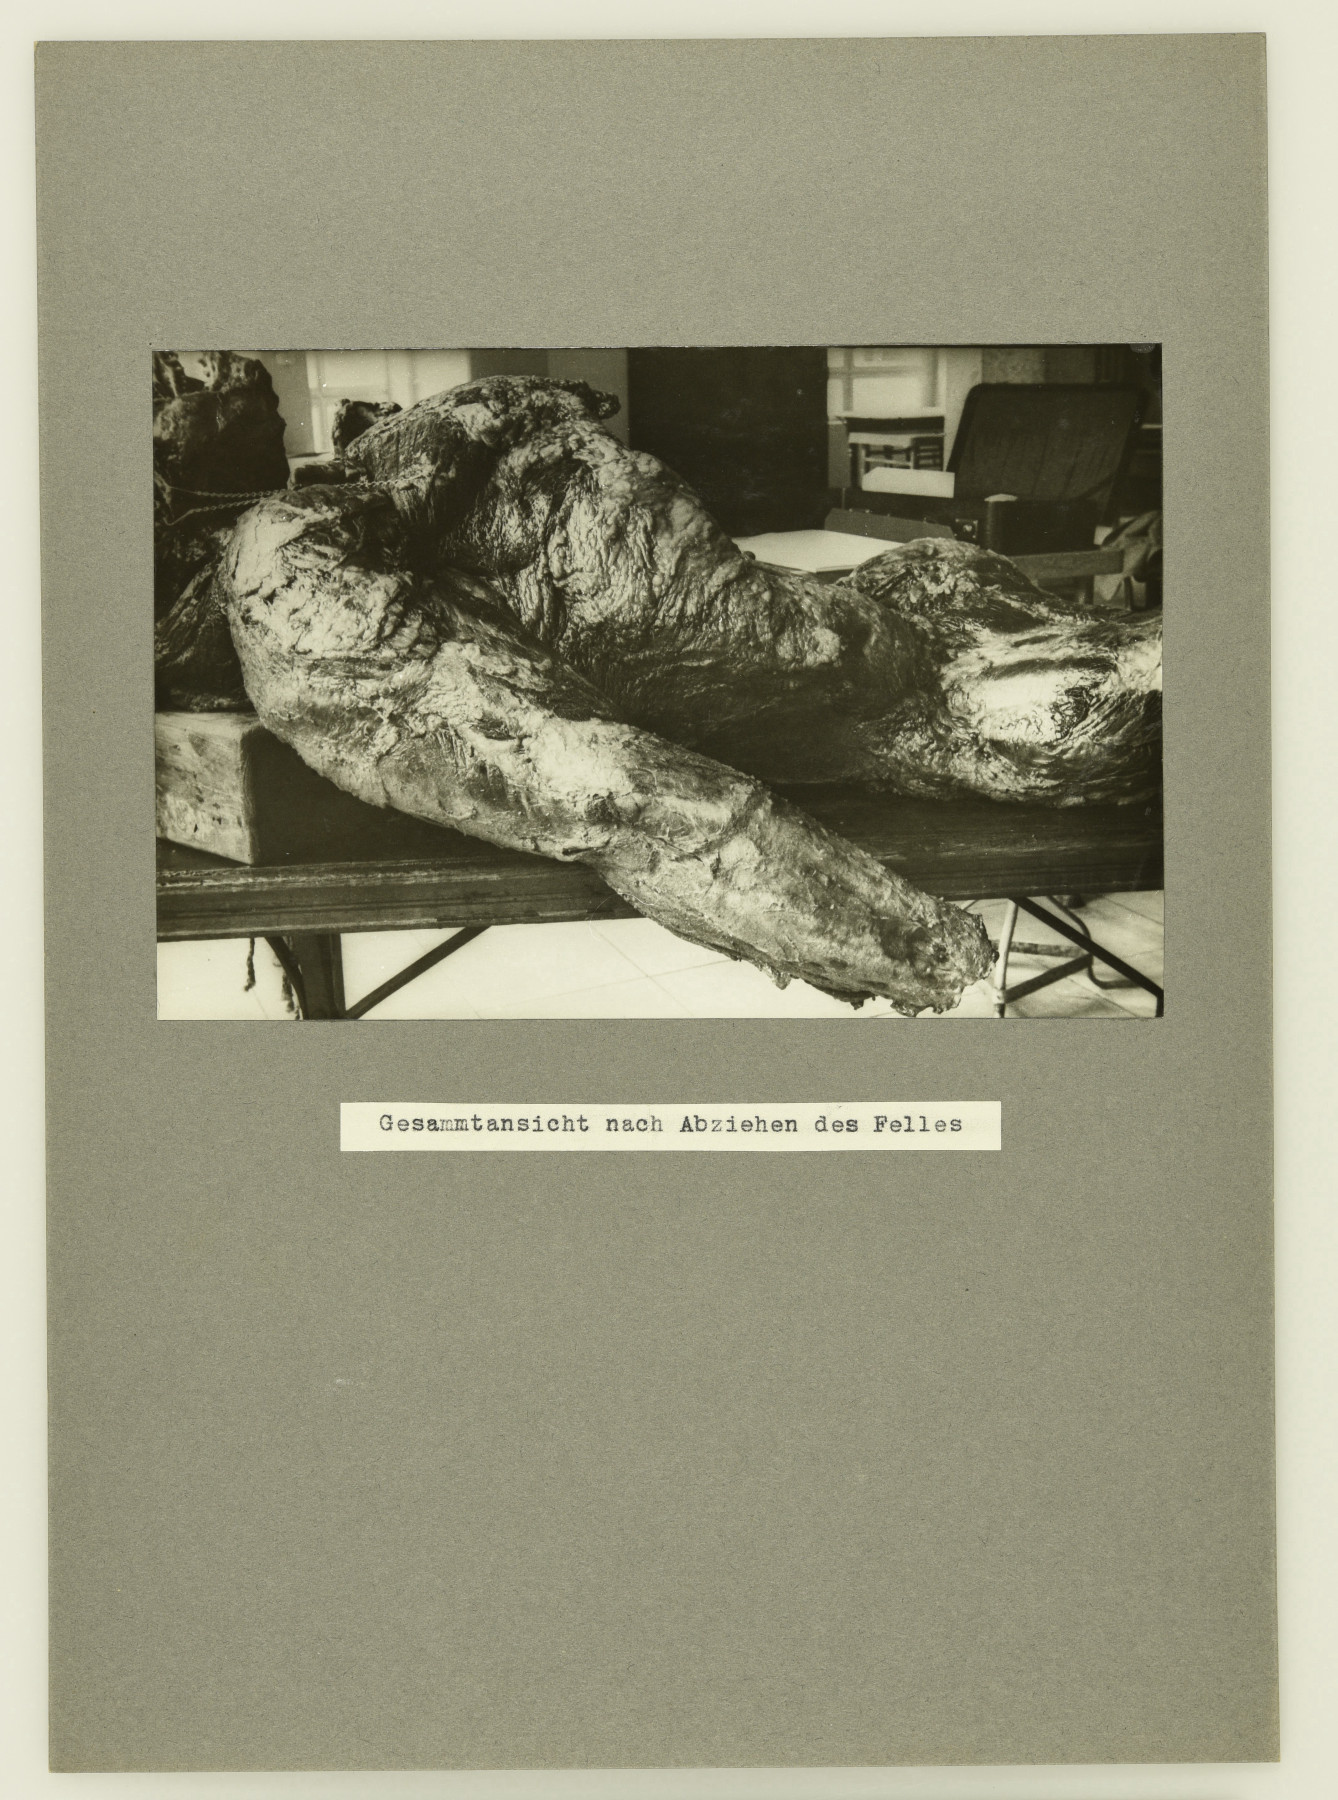 Schwarz-Weiß-Fotografie des gehäuteten Oberkörpers eines Gorillas, dem die Hände abgetrennt wurden, auf einem Tisch oder einer Bahre in einem Innenraum liegend.